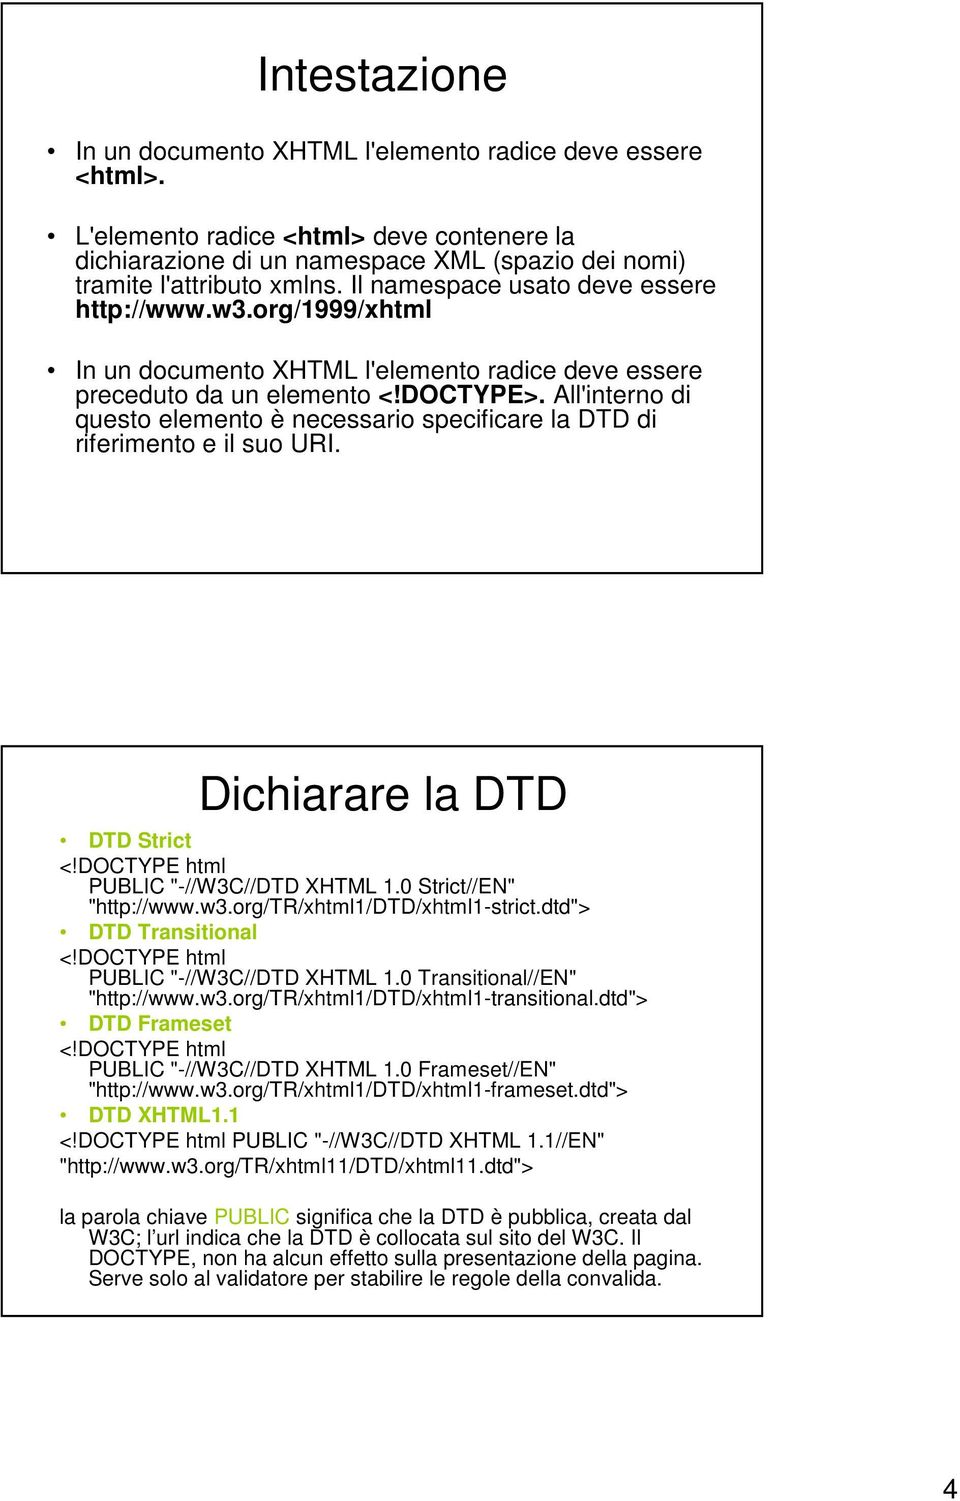 All'interno di questo elemento è necessario specificare la DTD di riferimento e il suo URI. Dichiarare la DTD DTD Strict <!DOCTYPE html PUBLIC "-//W3C//DTD XHTML 1.0 Strict//EN" "http://www.w3.